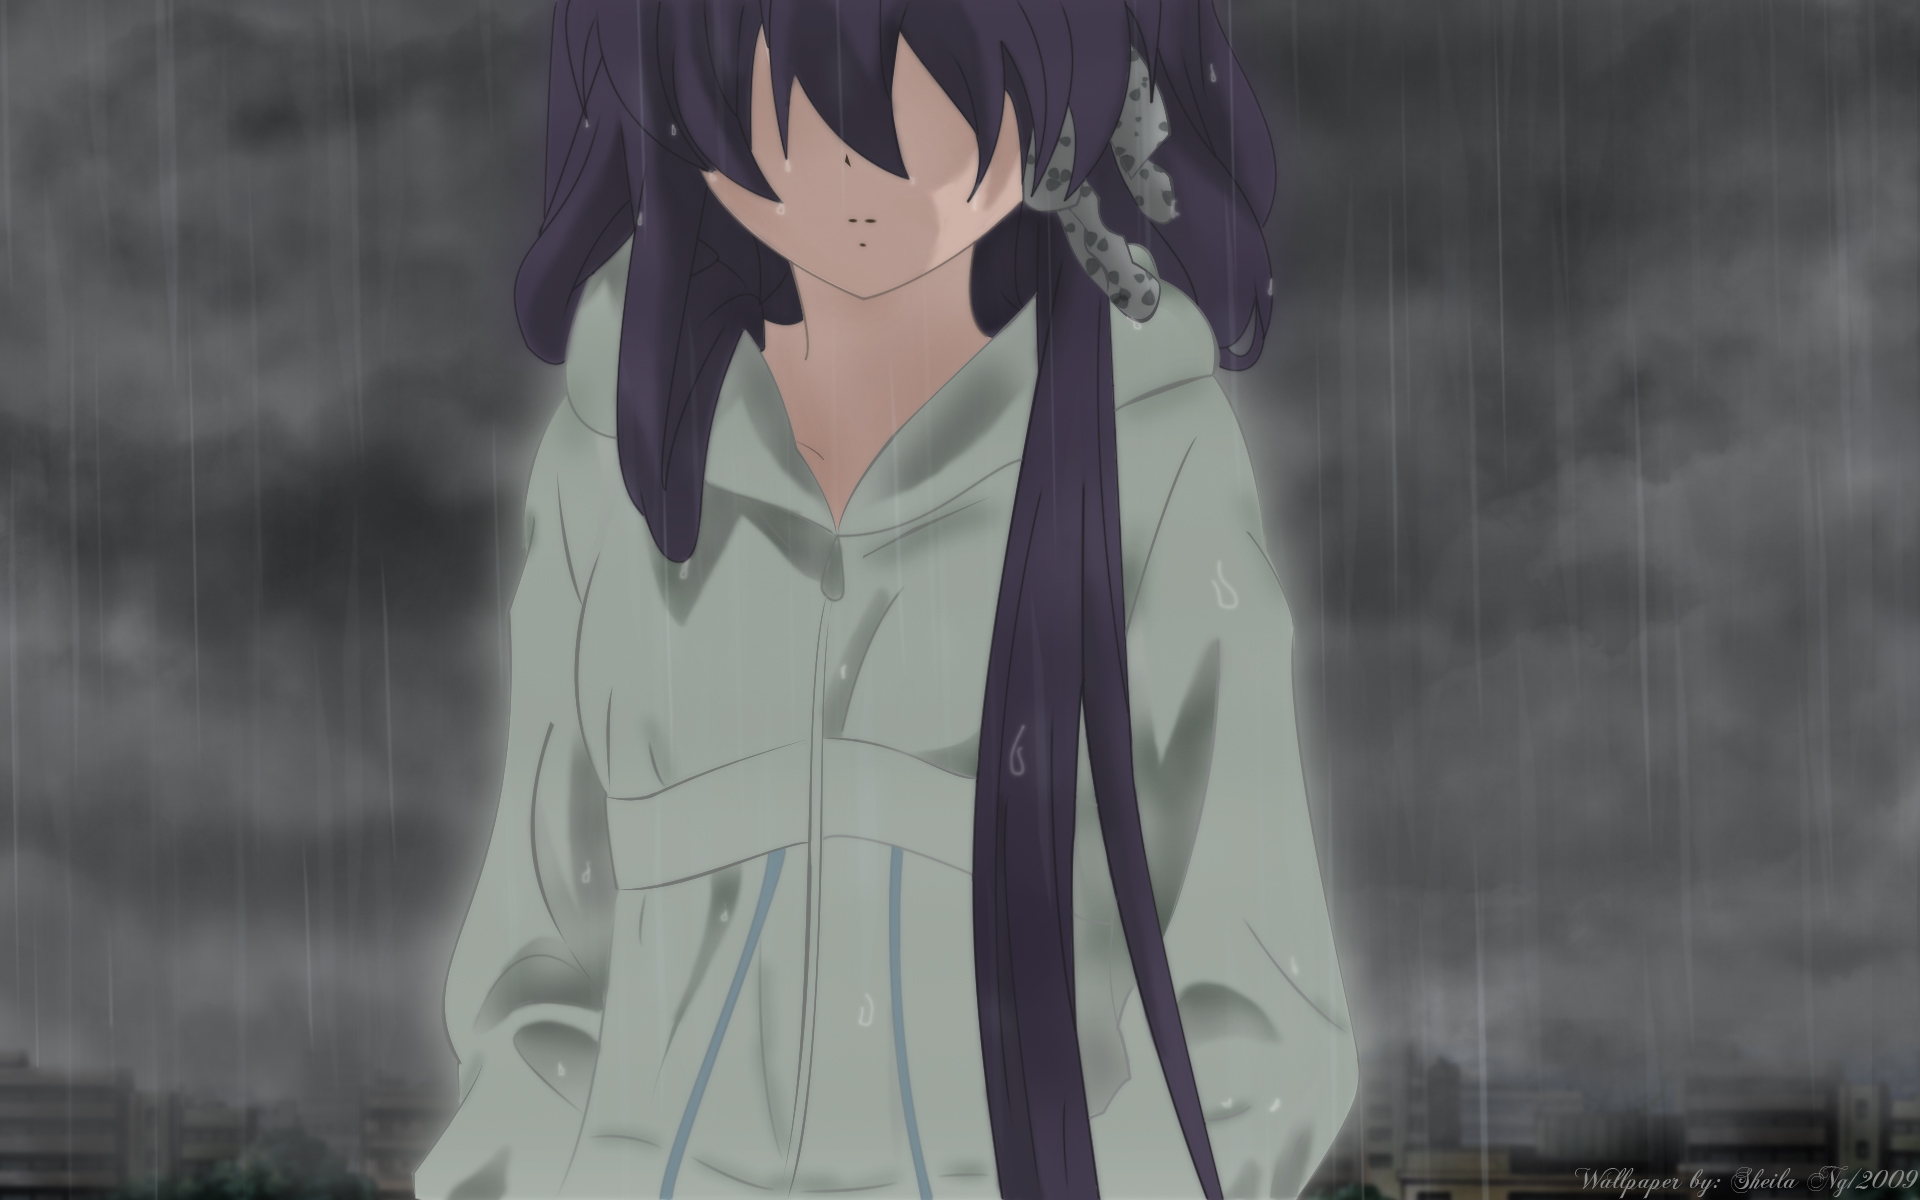 3d обои Грустная аниме девушка под дождем (Wallpaper by Sheila 2009)  дождь # 34383